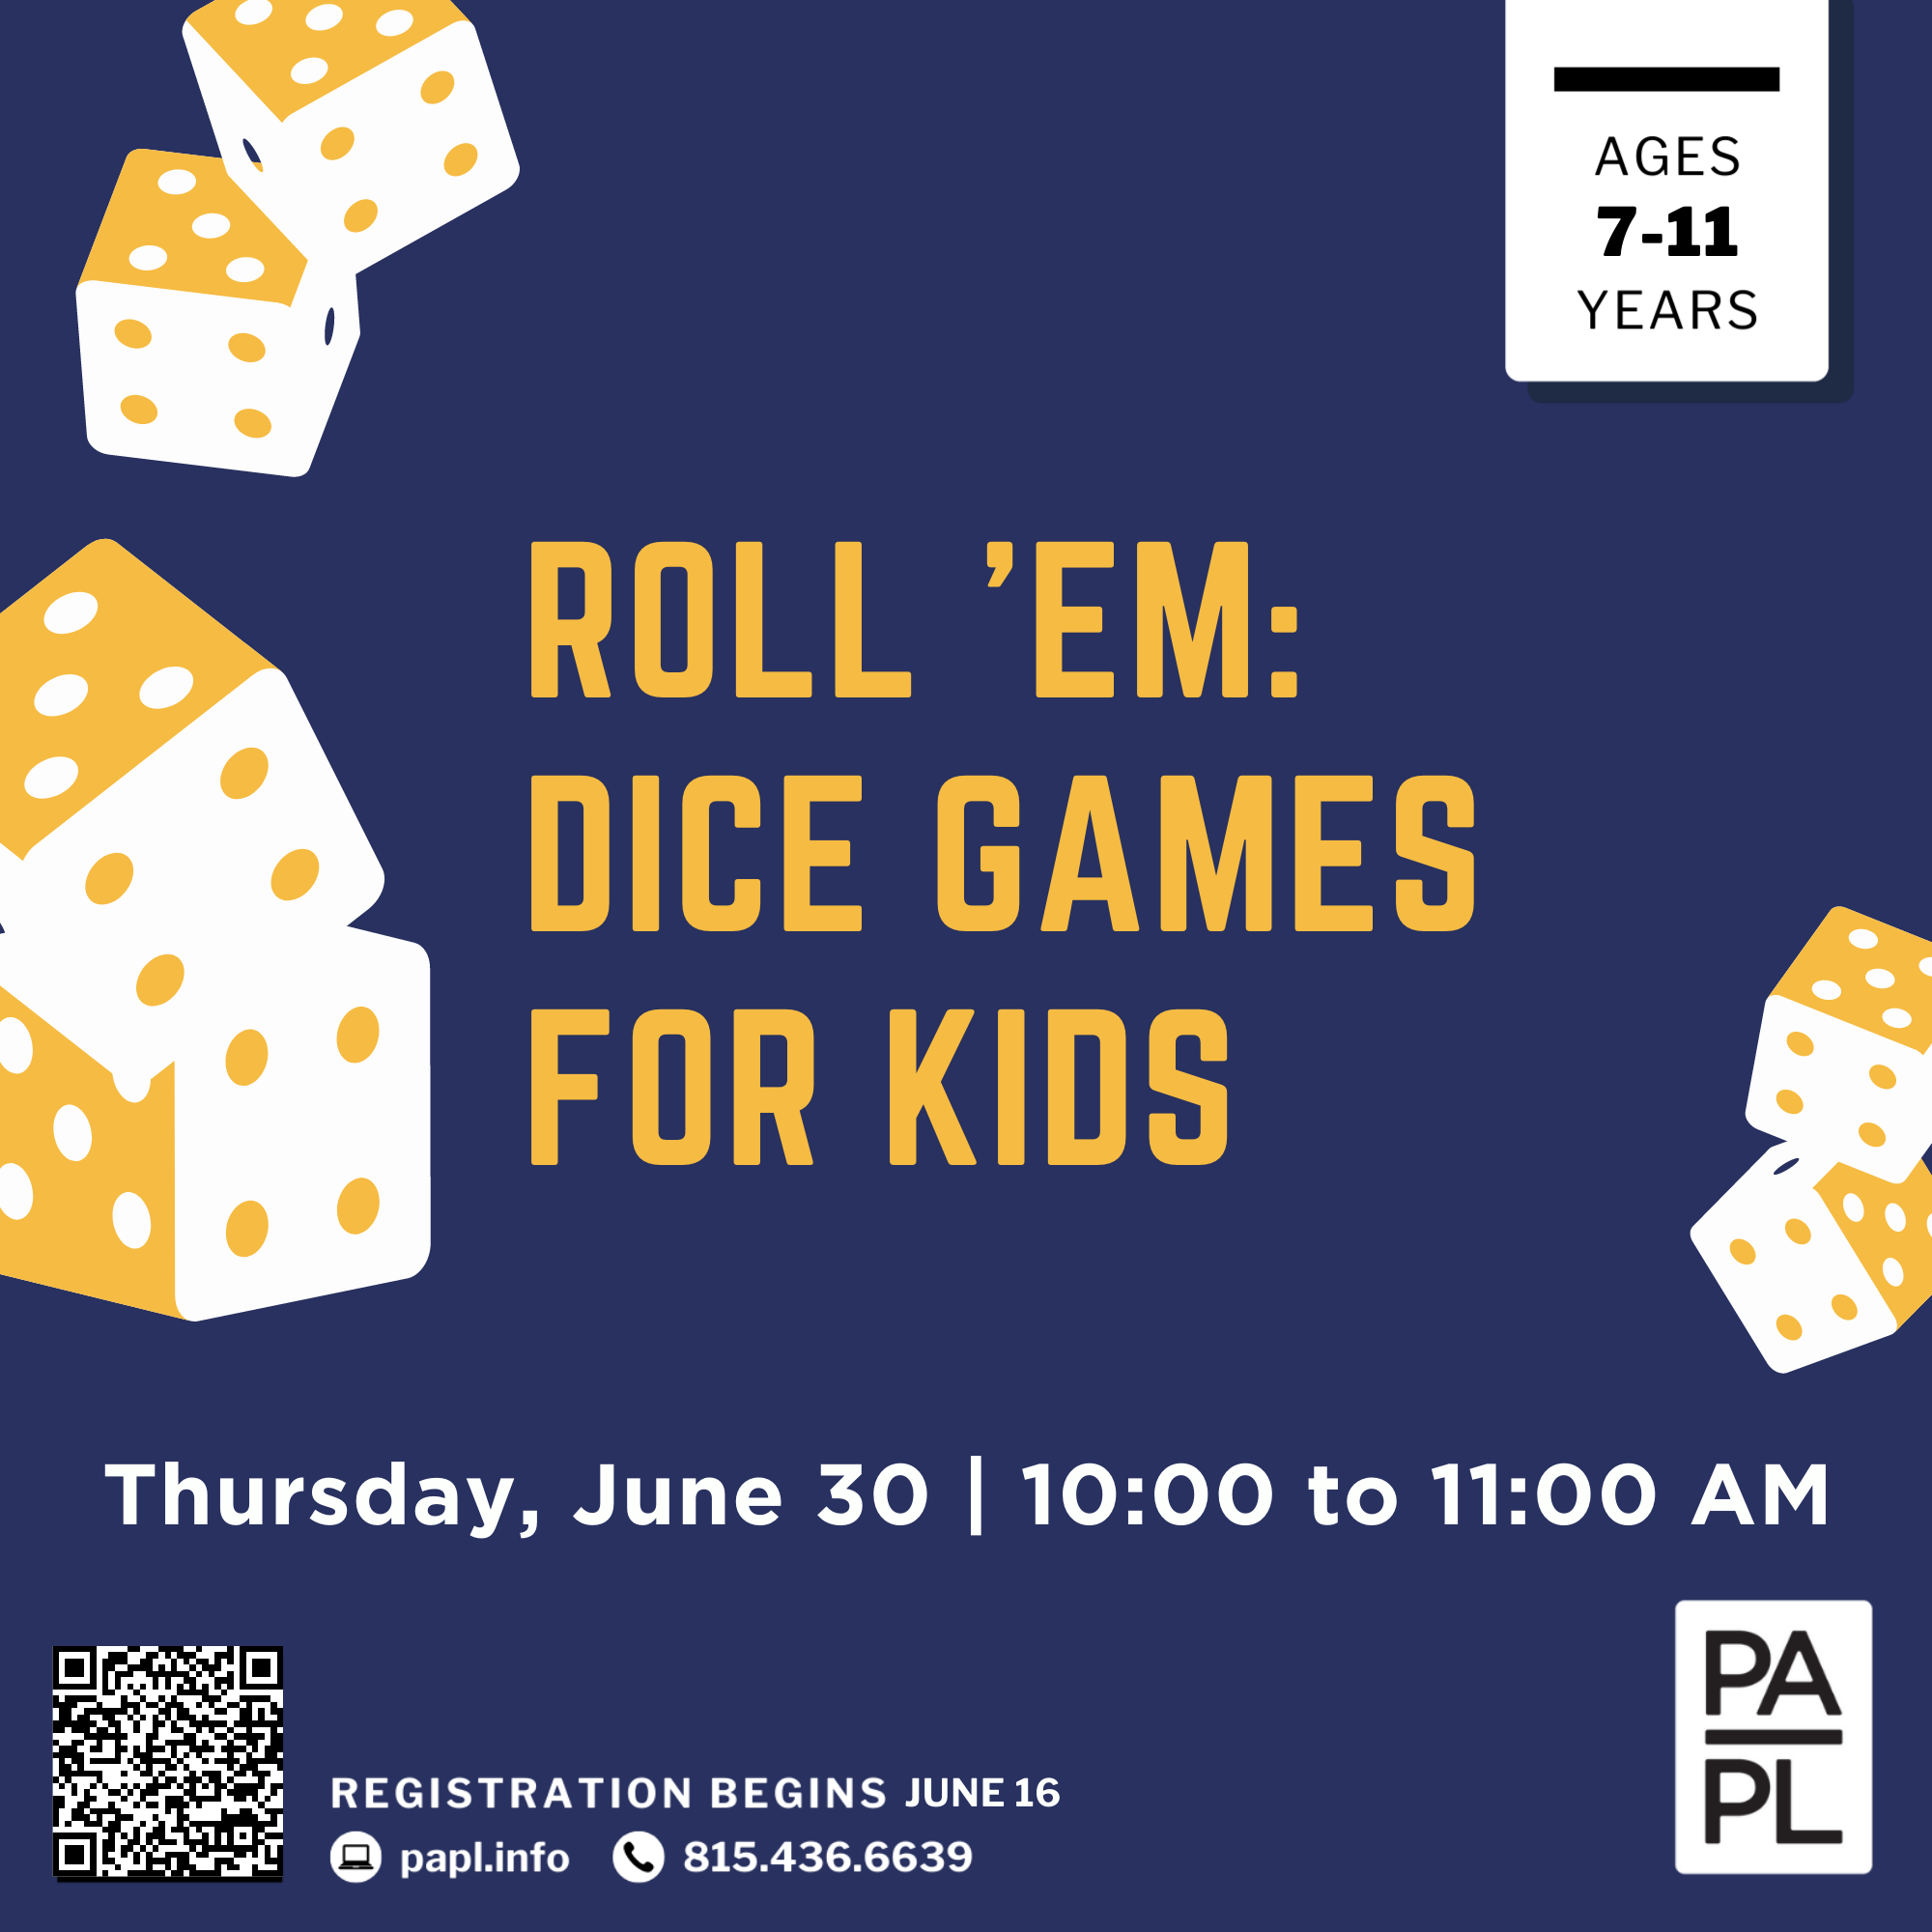 Roll 'em: Dice Games for Kids